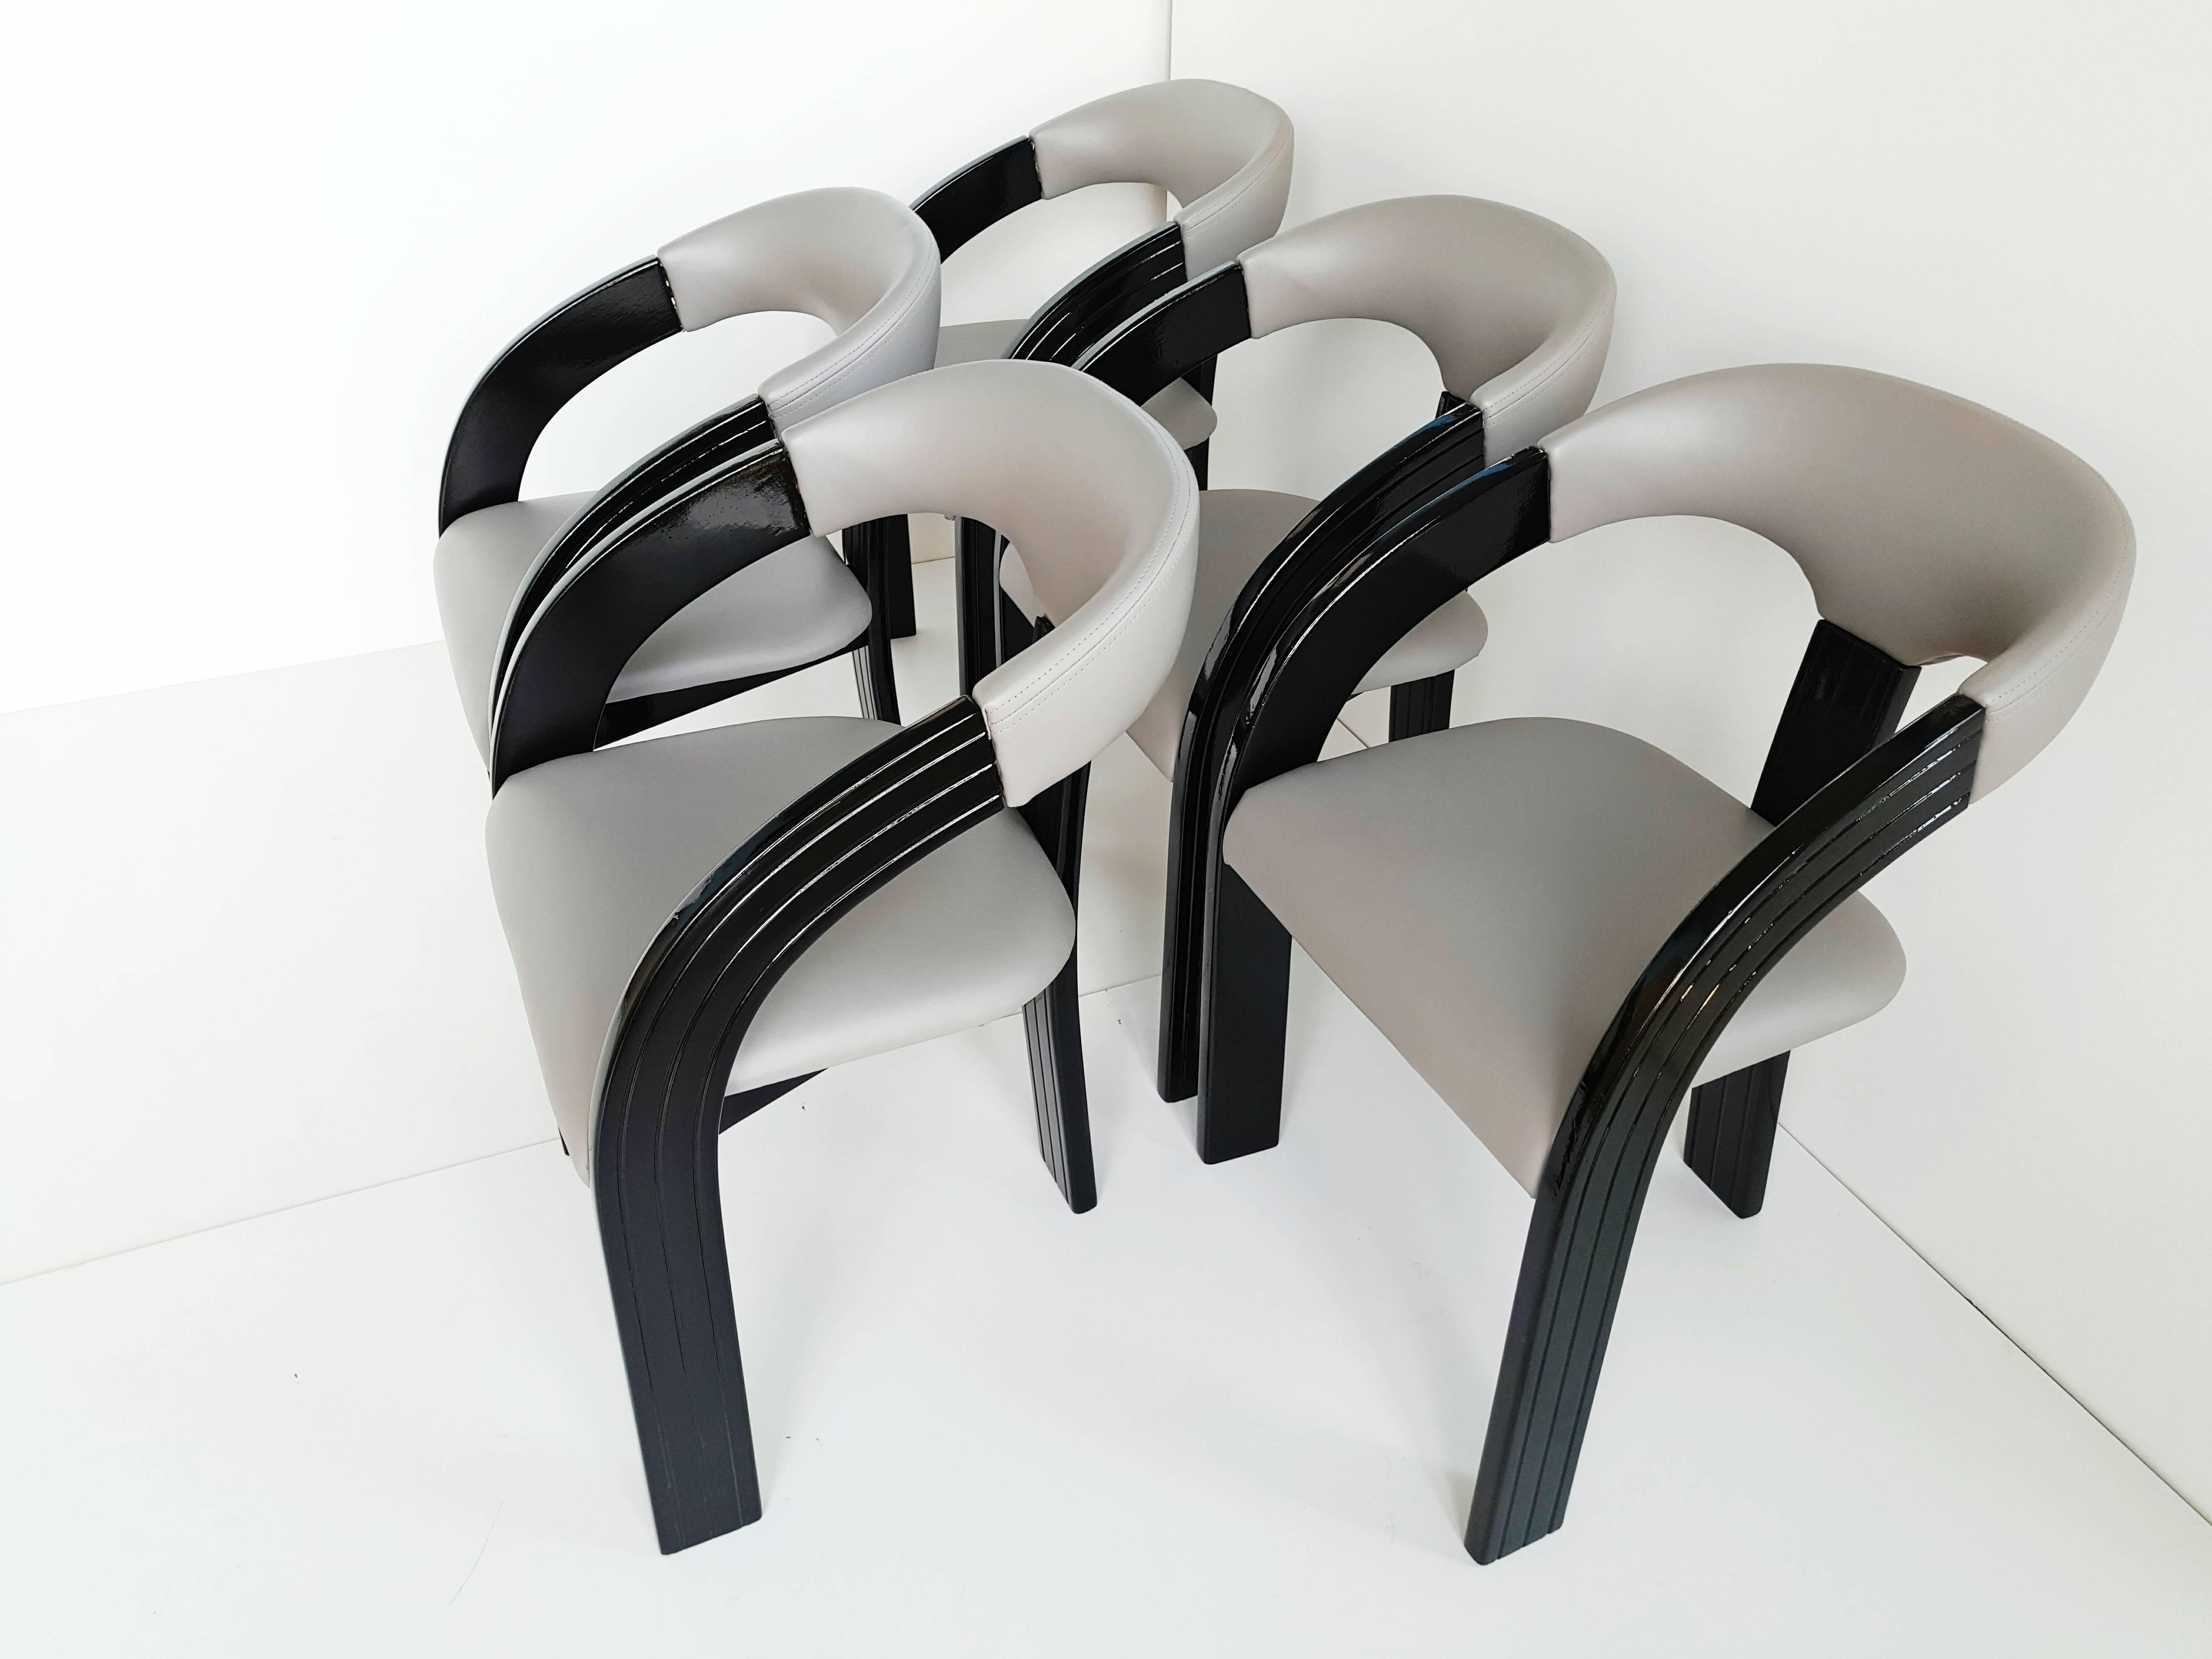 Schöner Satz von fünf schwarz lackierten Sesseln mit neuem grauem Kunstleder und neuem Schaumstoff, hergestellt in den 1960er Jahren. Sehr bequem und sehr originell mit drei Beinen.